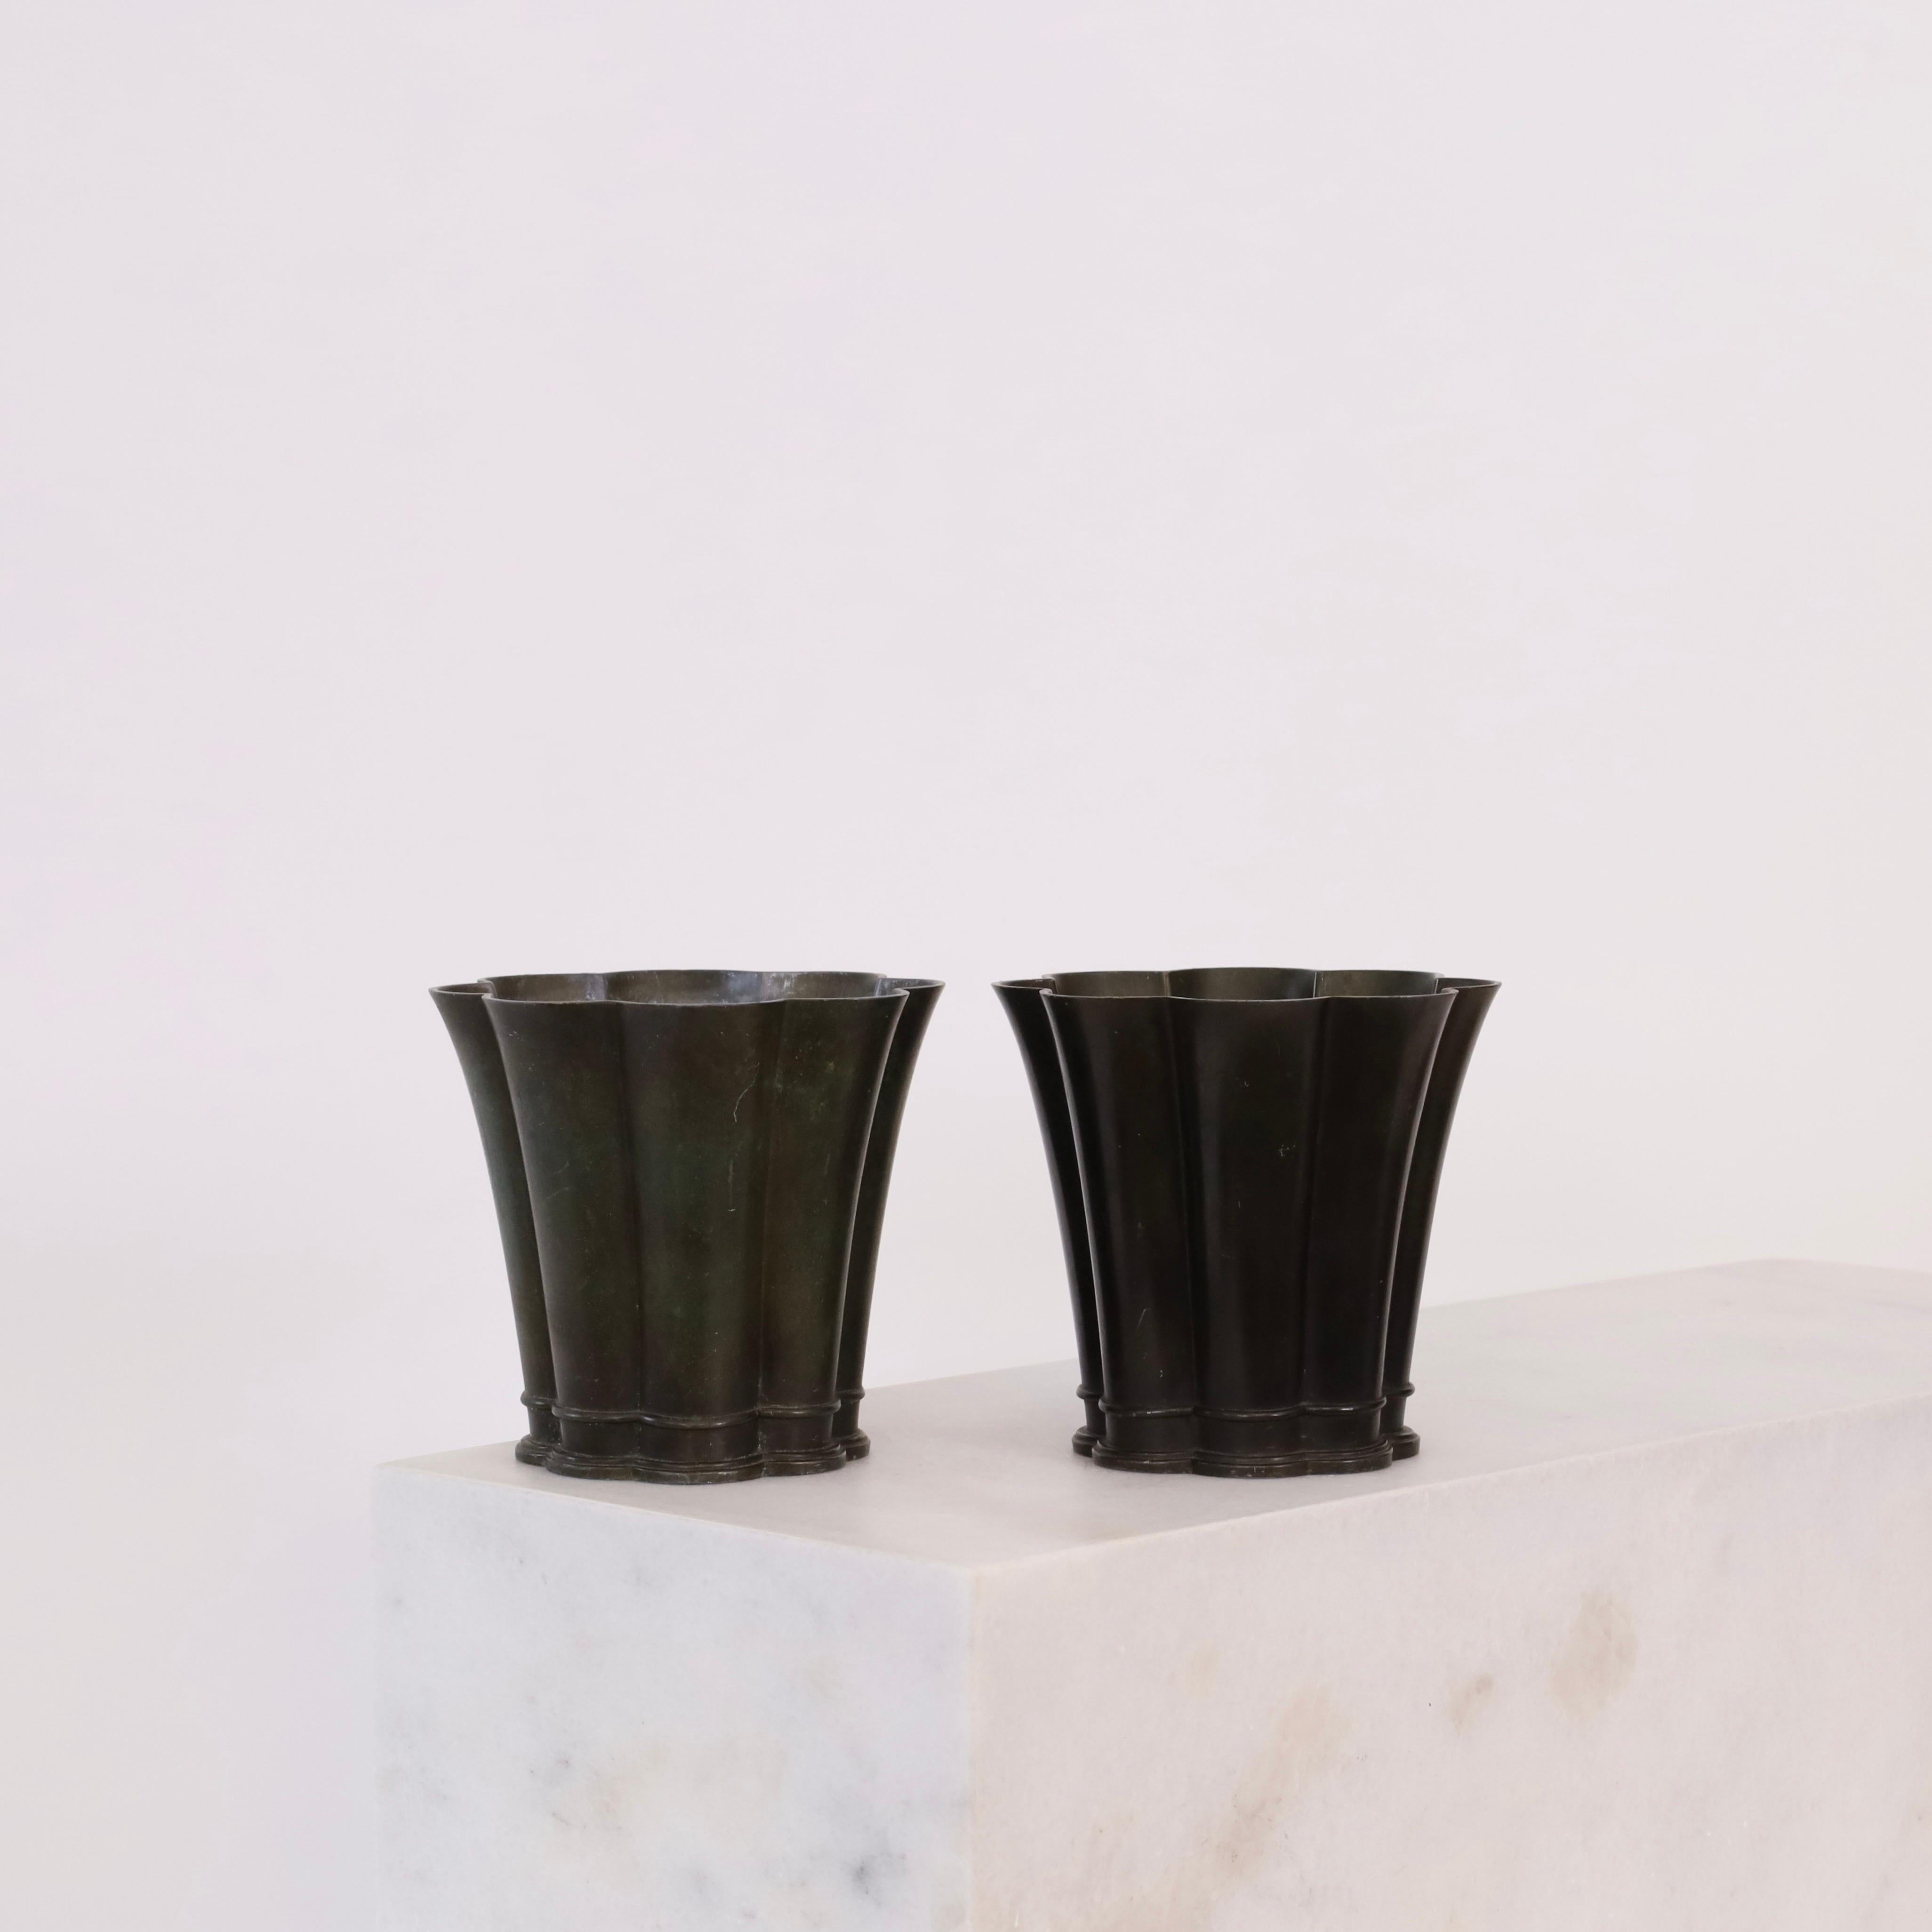 Un ensemble de vases métalliques festonnés conçus par Just Andersen dans les années 1940. Un duo rare et exquis. 

* Un ensemble (2) de vases métalliques ronds et festonnés 
* Designer : Just Andersen
* Modèle : D1873
* Année : années 1940
*